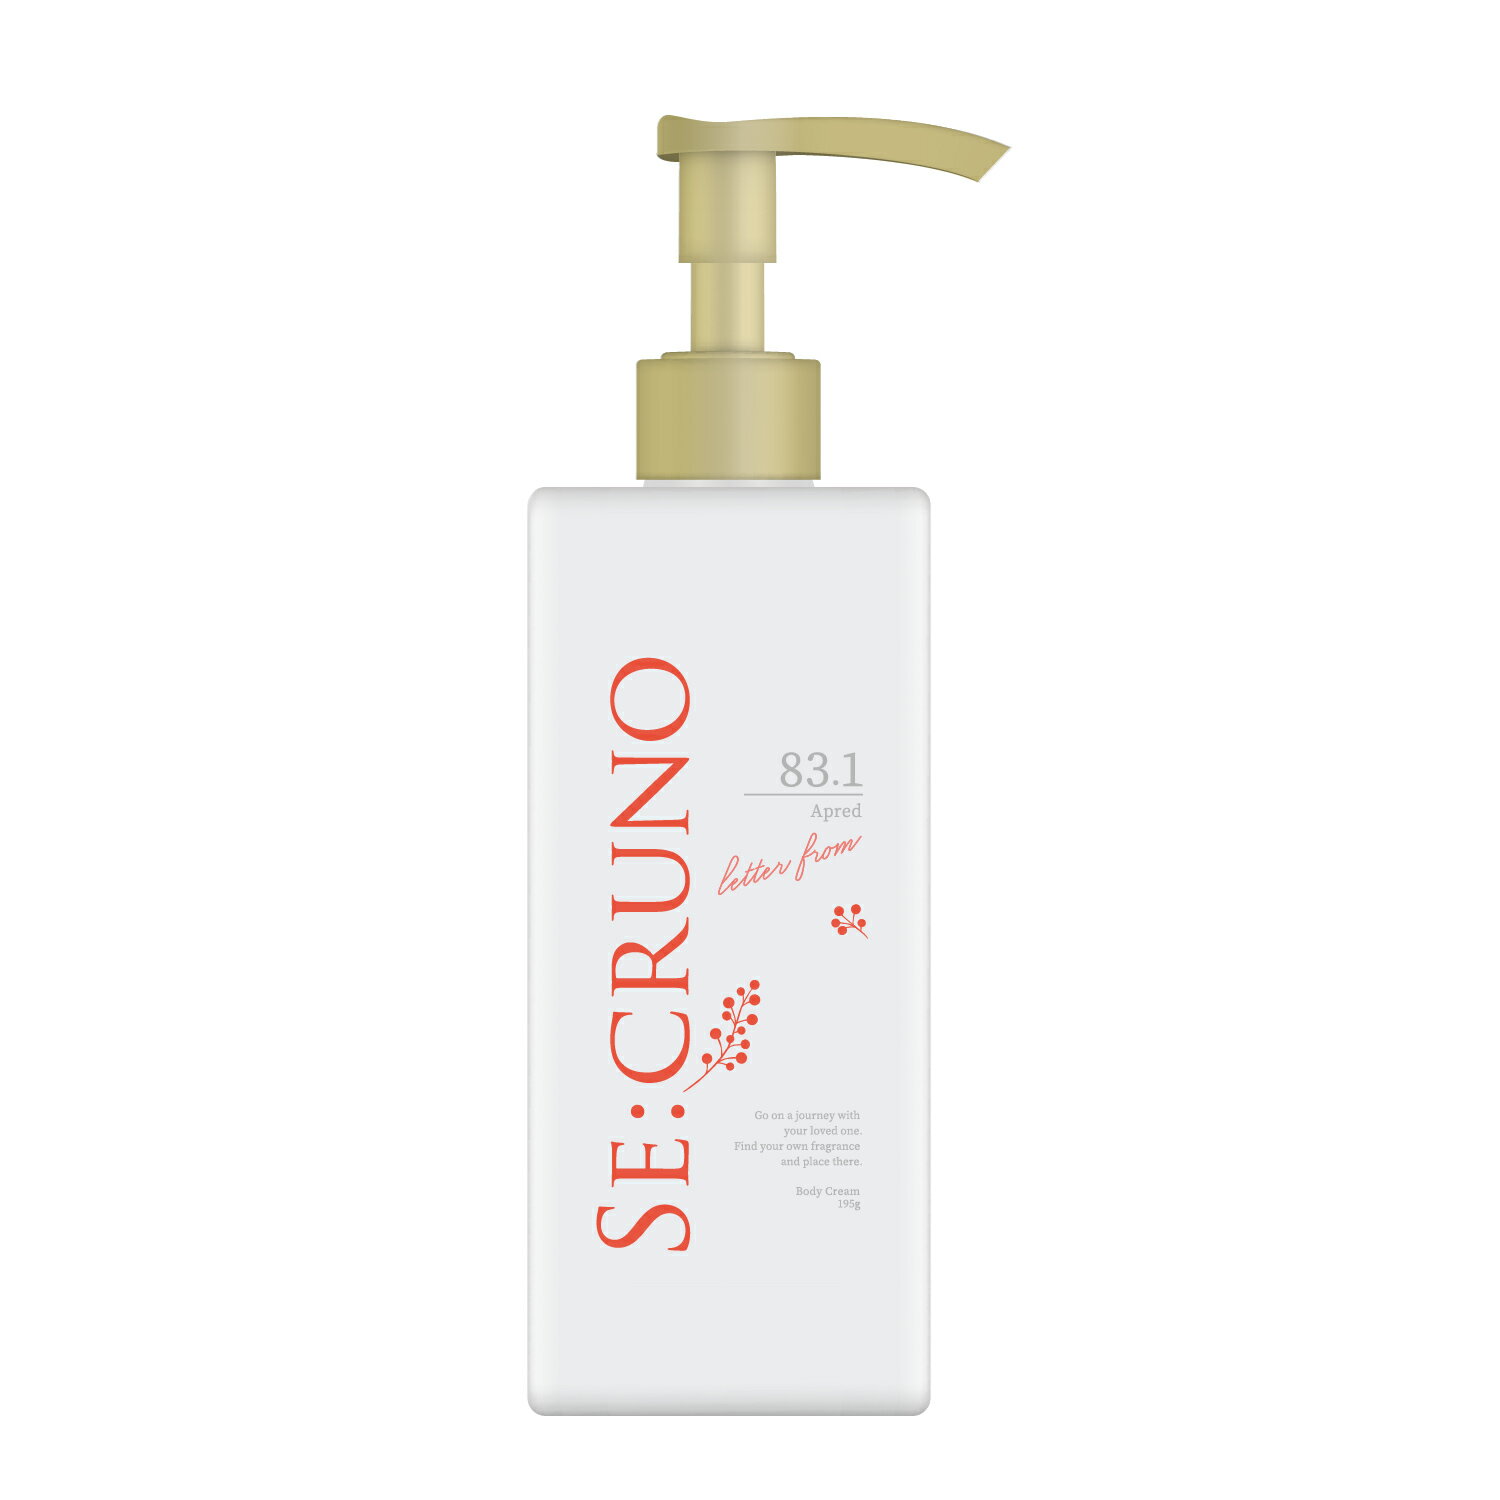 【公式】SE:CRUNO シークルーノ ボディクリーム アプレッド83.1 ＜アプリコットフラワーの香り＞ ボディケア 保湿 もちもち肌